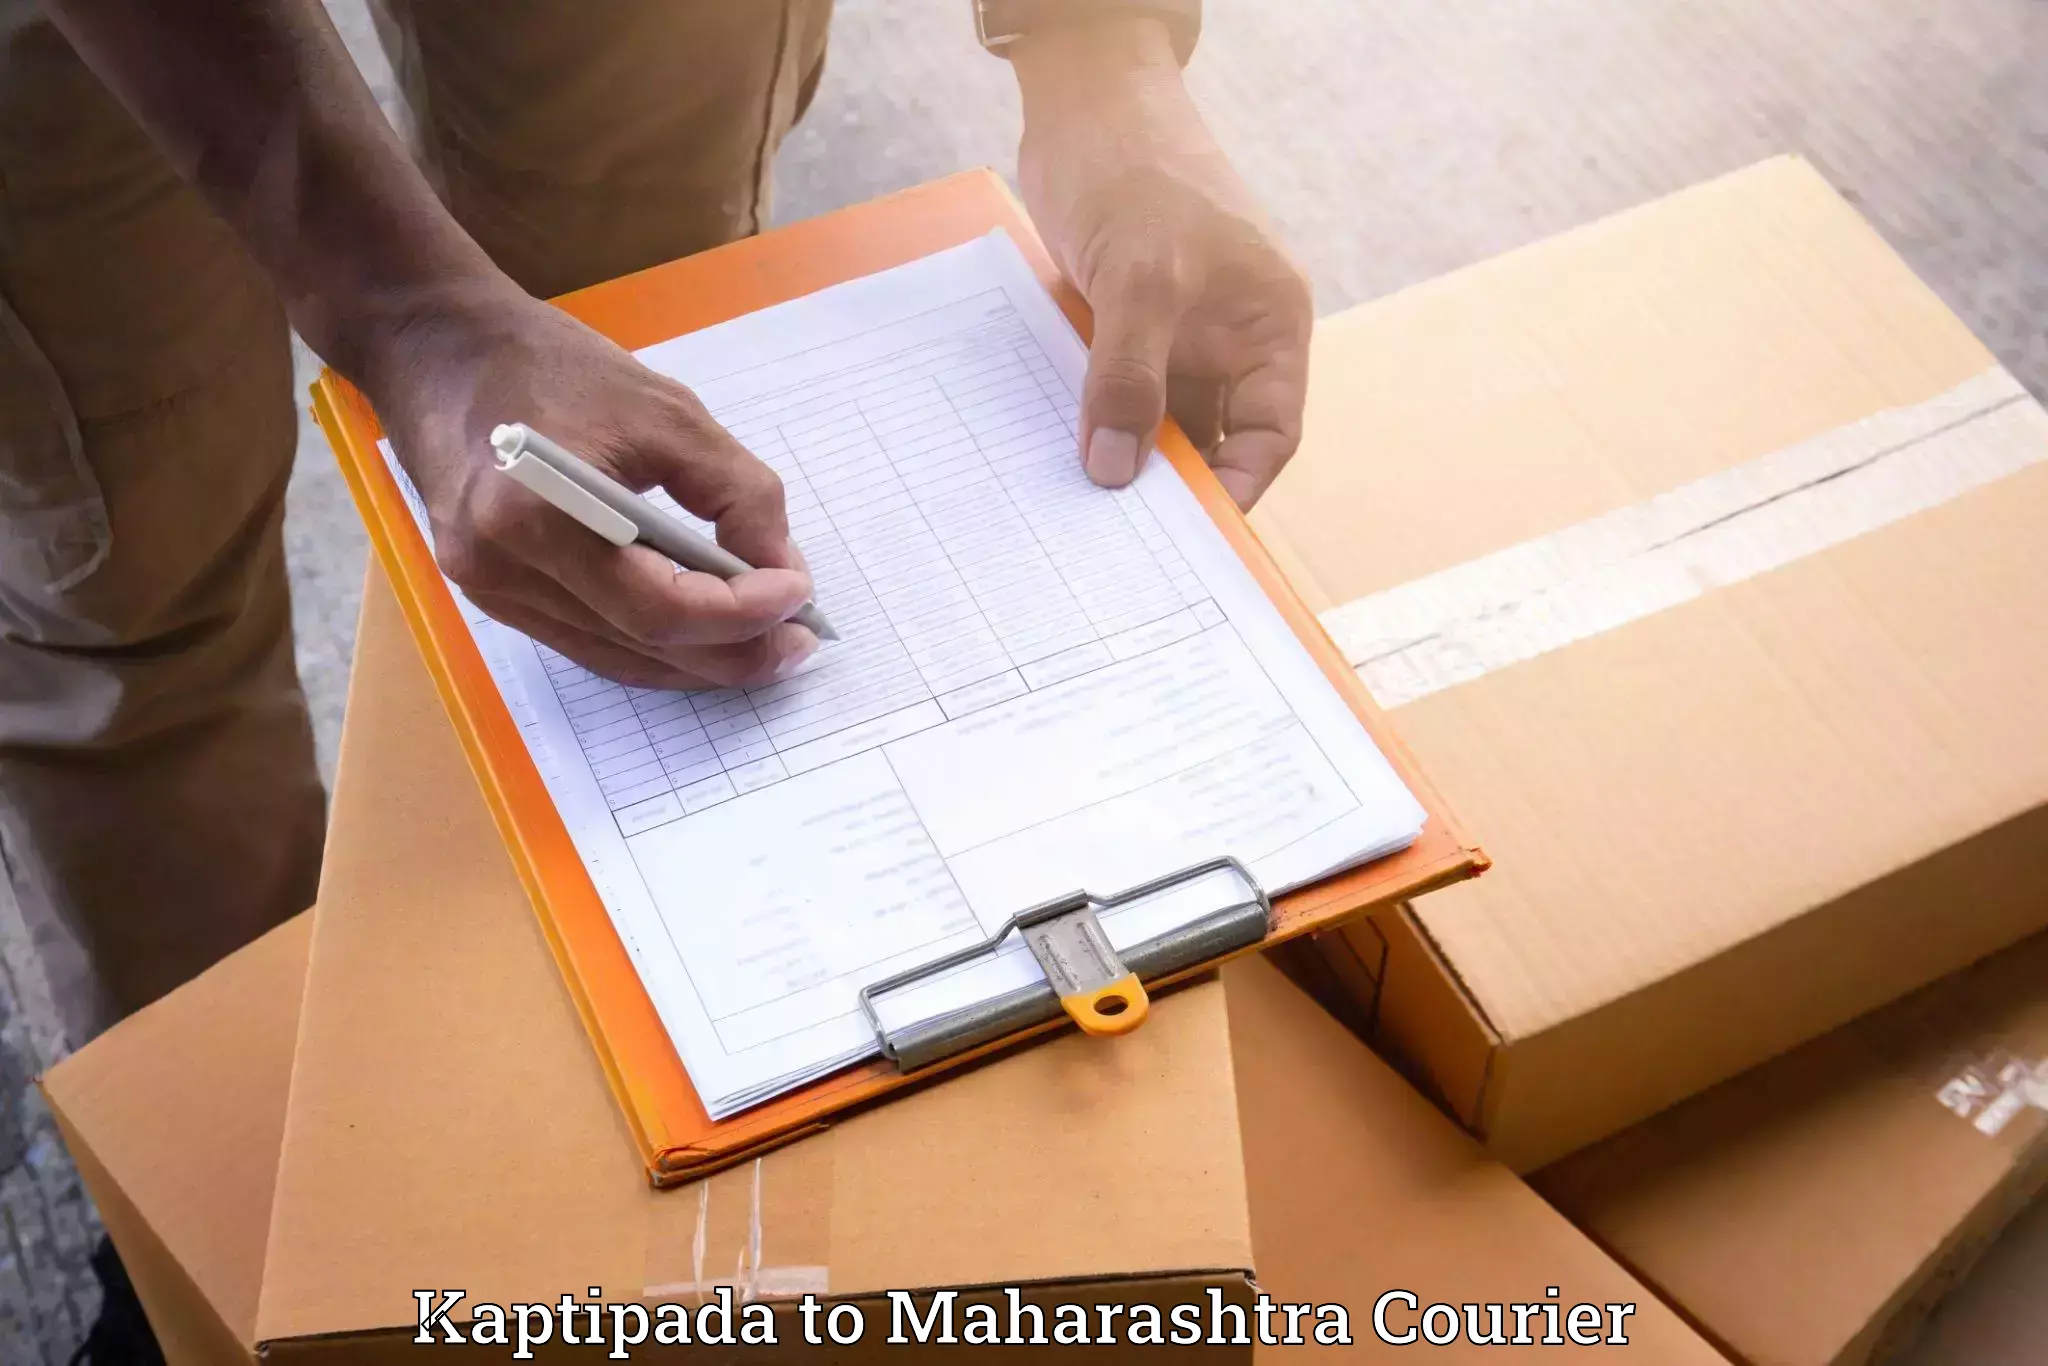 Moving service excellence Kaptipada to Maharashtra